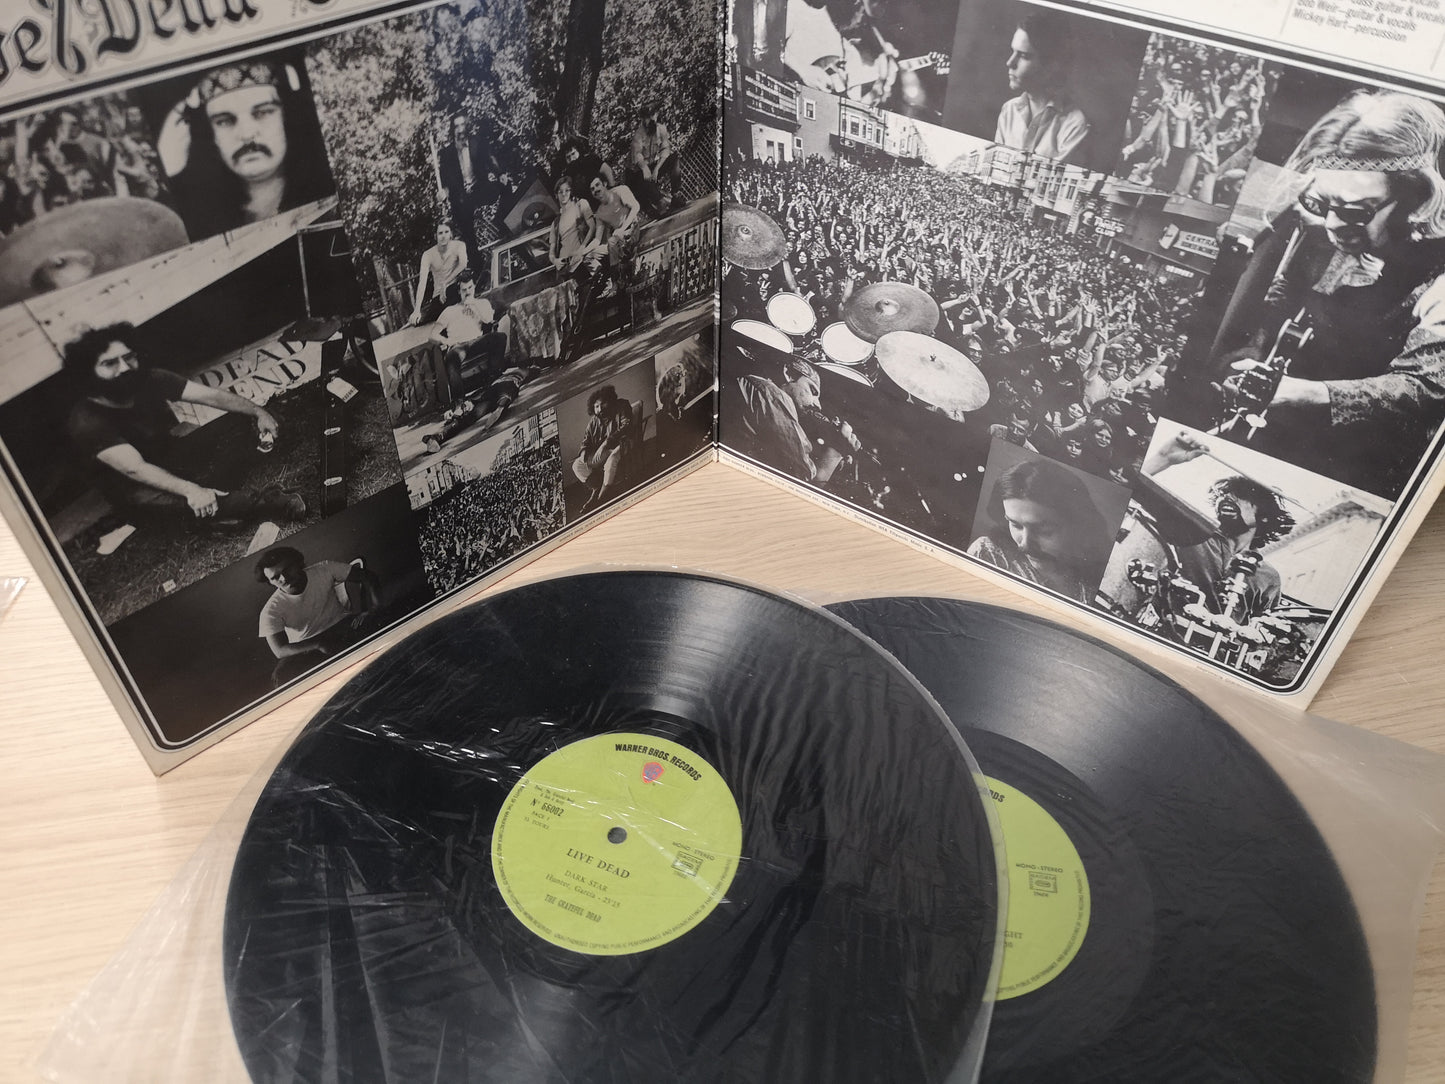 Grateful Dead "Live/Dead" Orig France 1971 EX/VG++ 2Lps